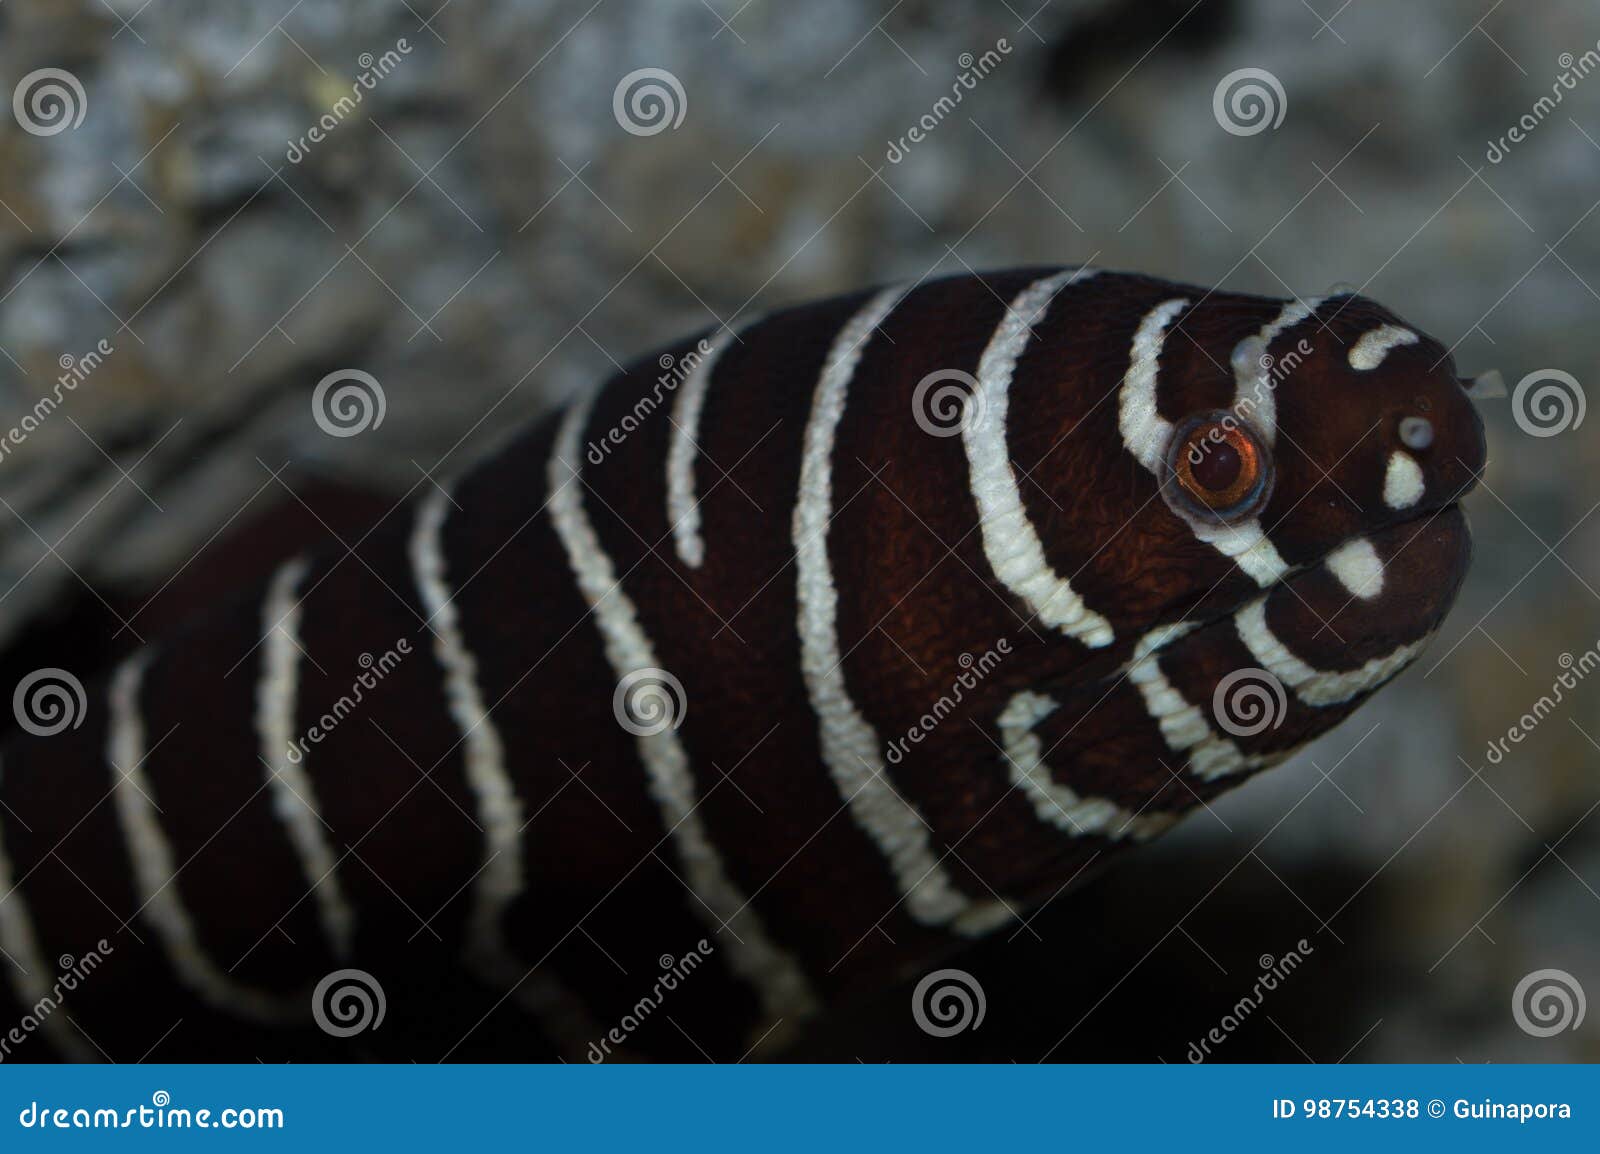 zebra moray eel closeup